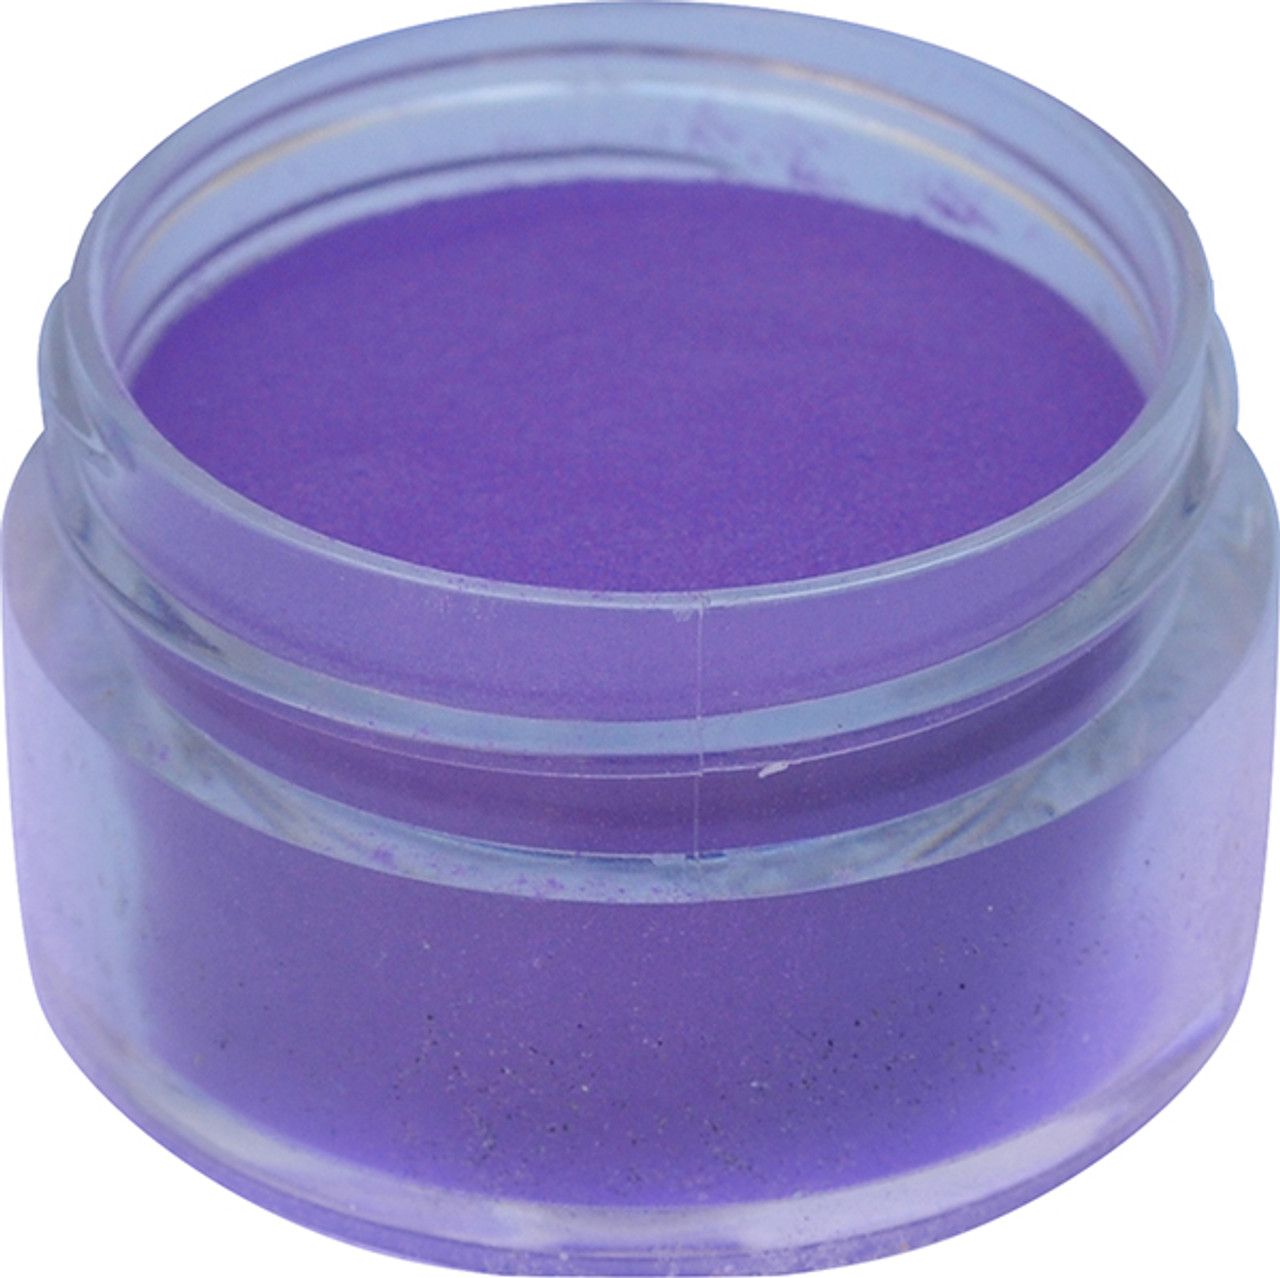 U2 PURE Color Powder - Violet - 4 oz